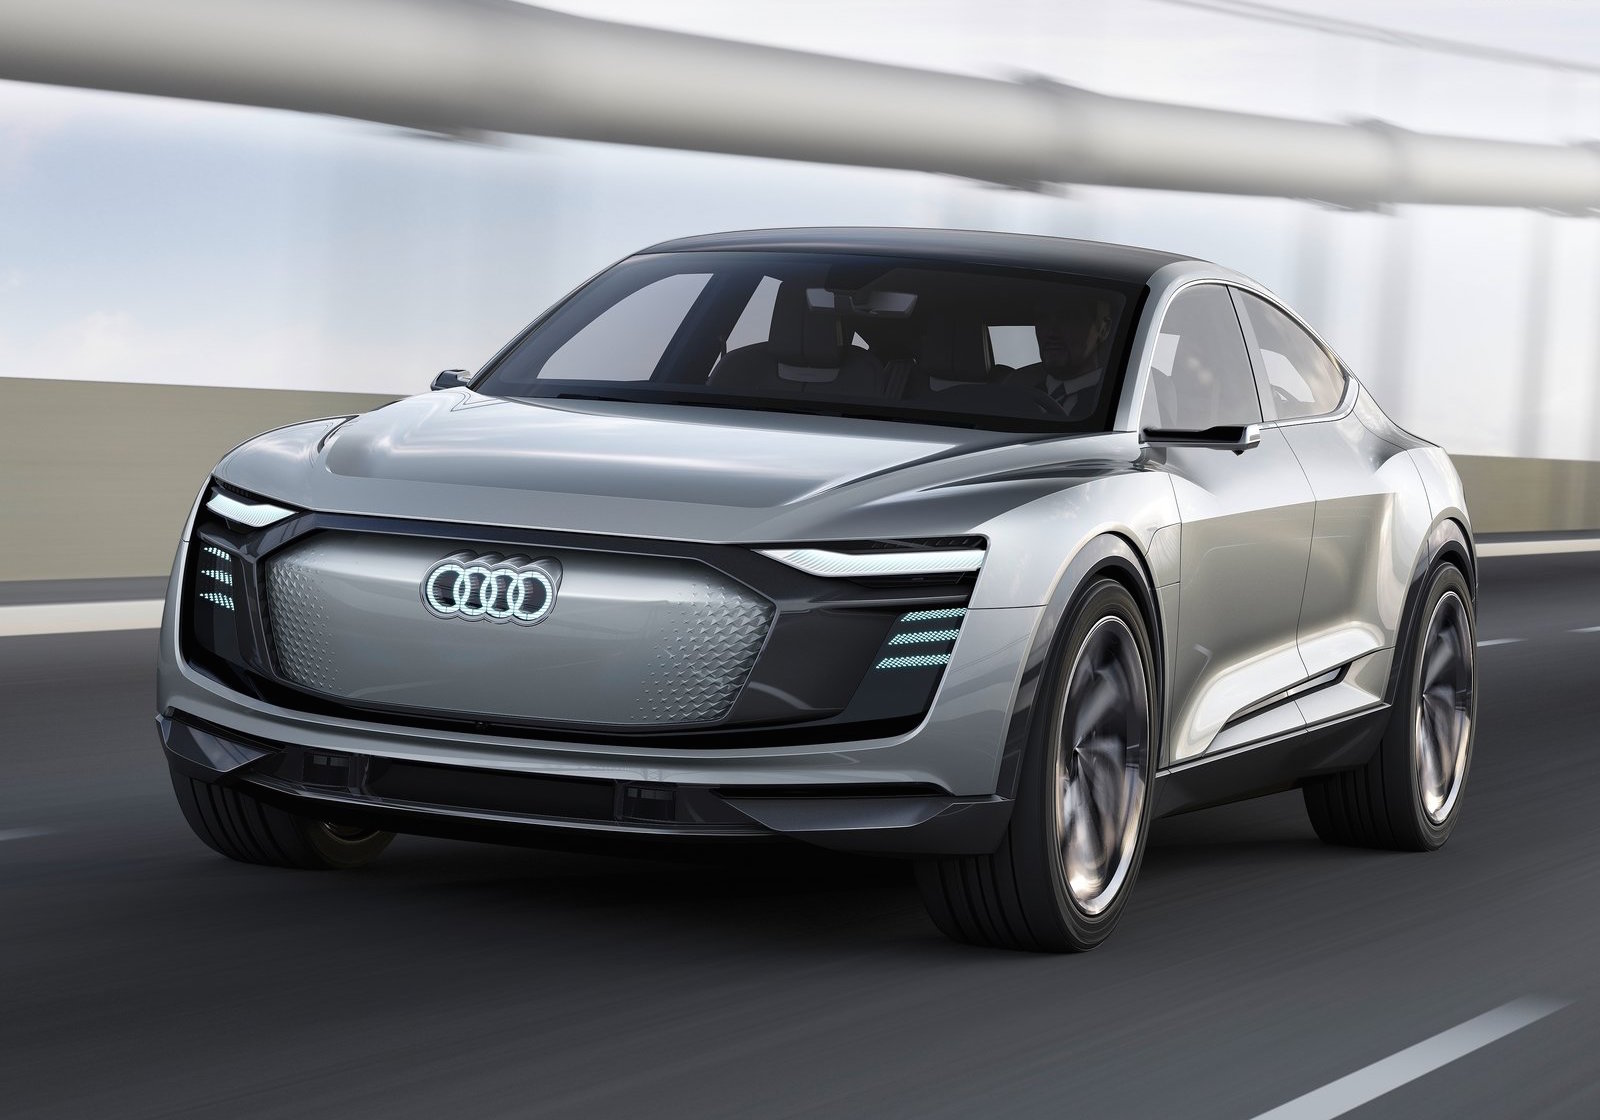 Audi Q8, Q4 coming in 2019, autonomous city car by 2021